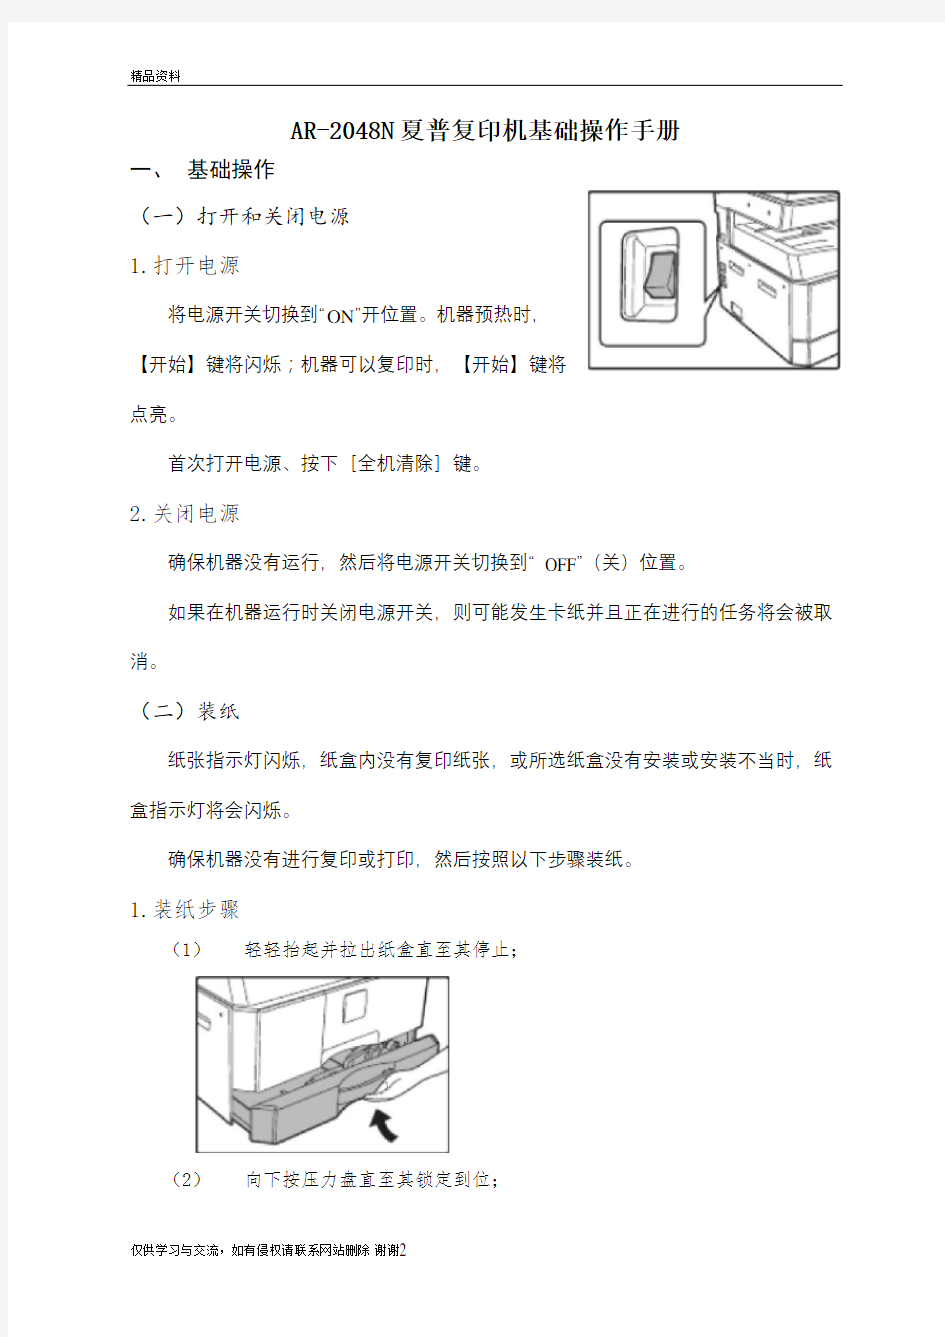 AR-2048N夏普复印机基础操作手册教学资料